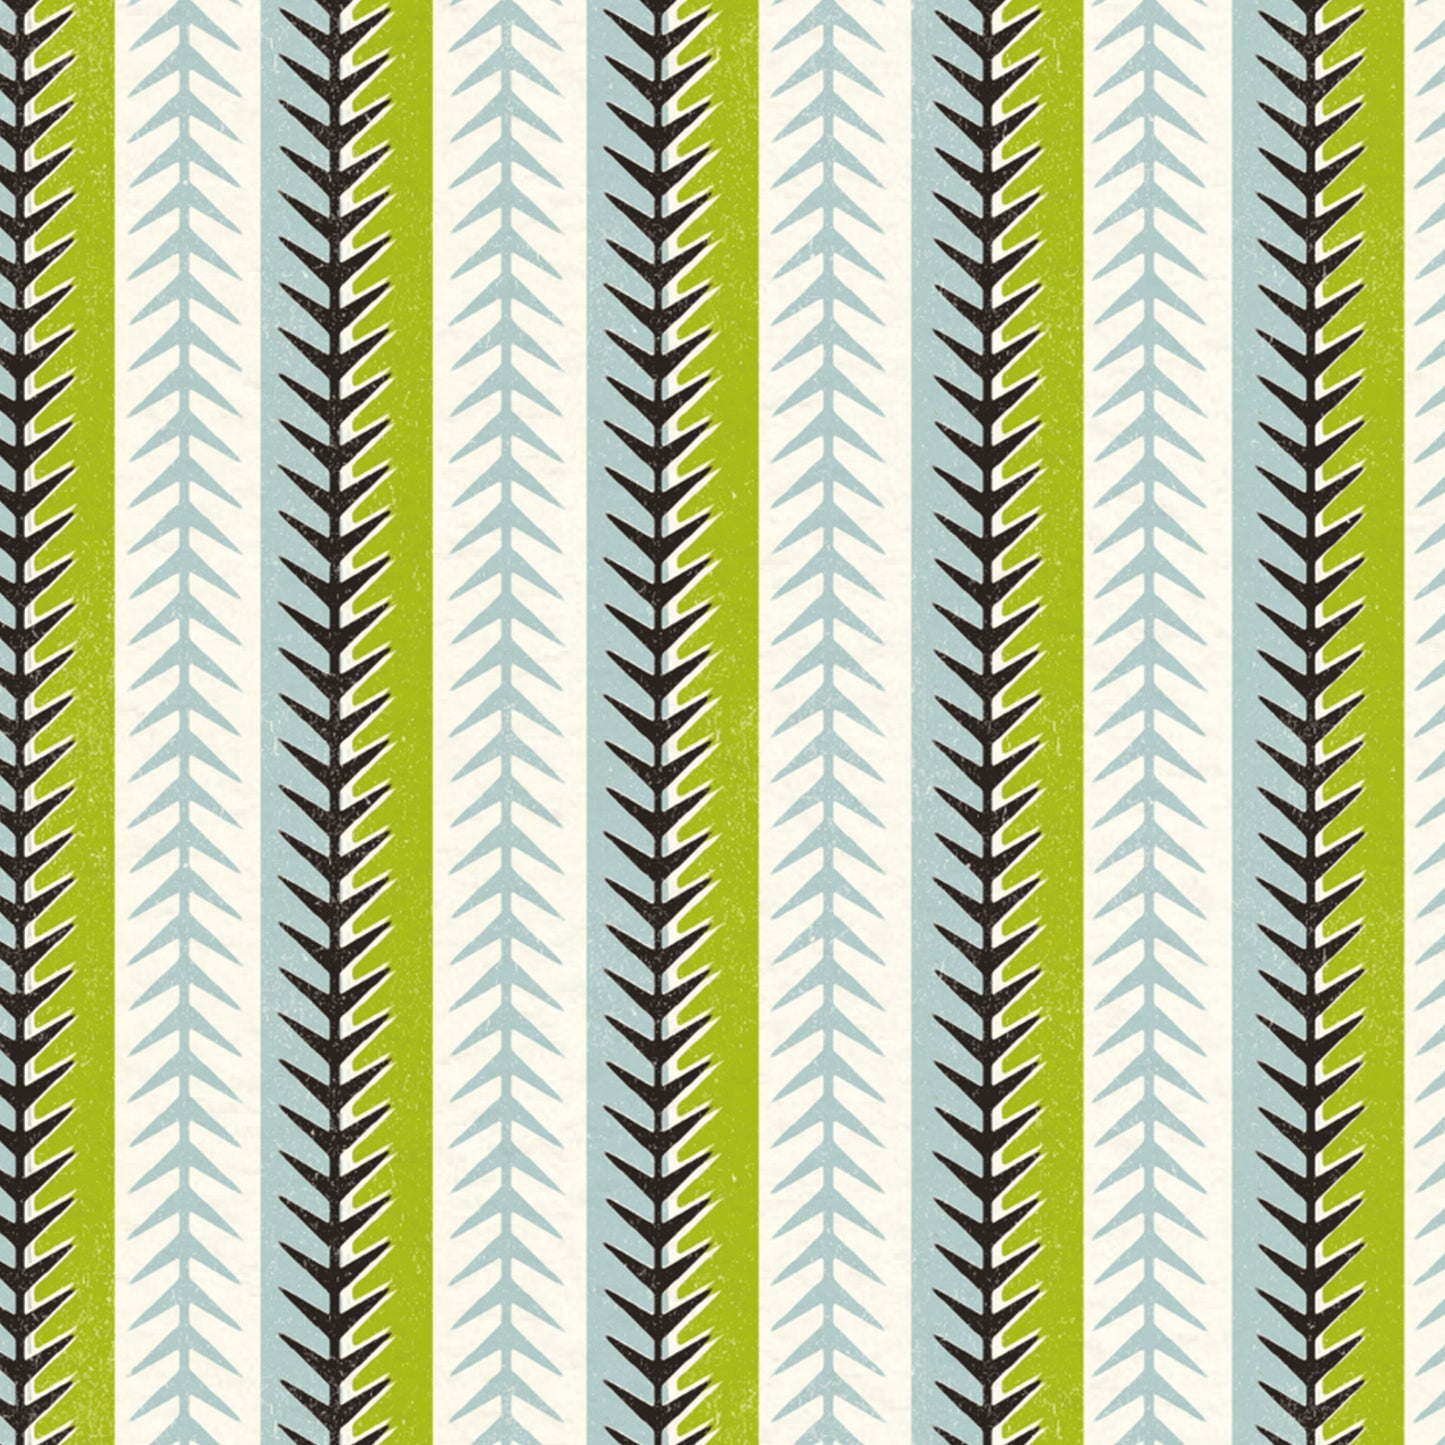 Just Patterns: Fitzrovia